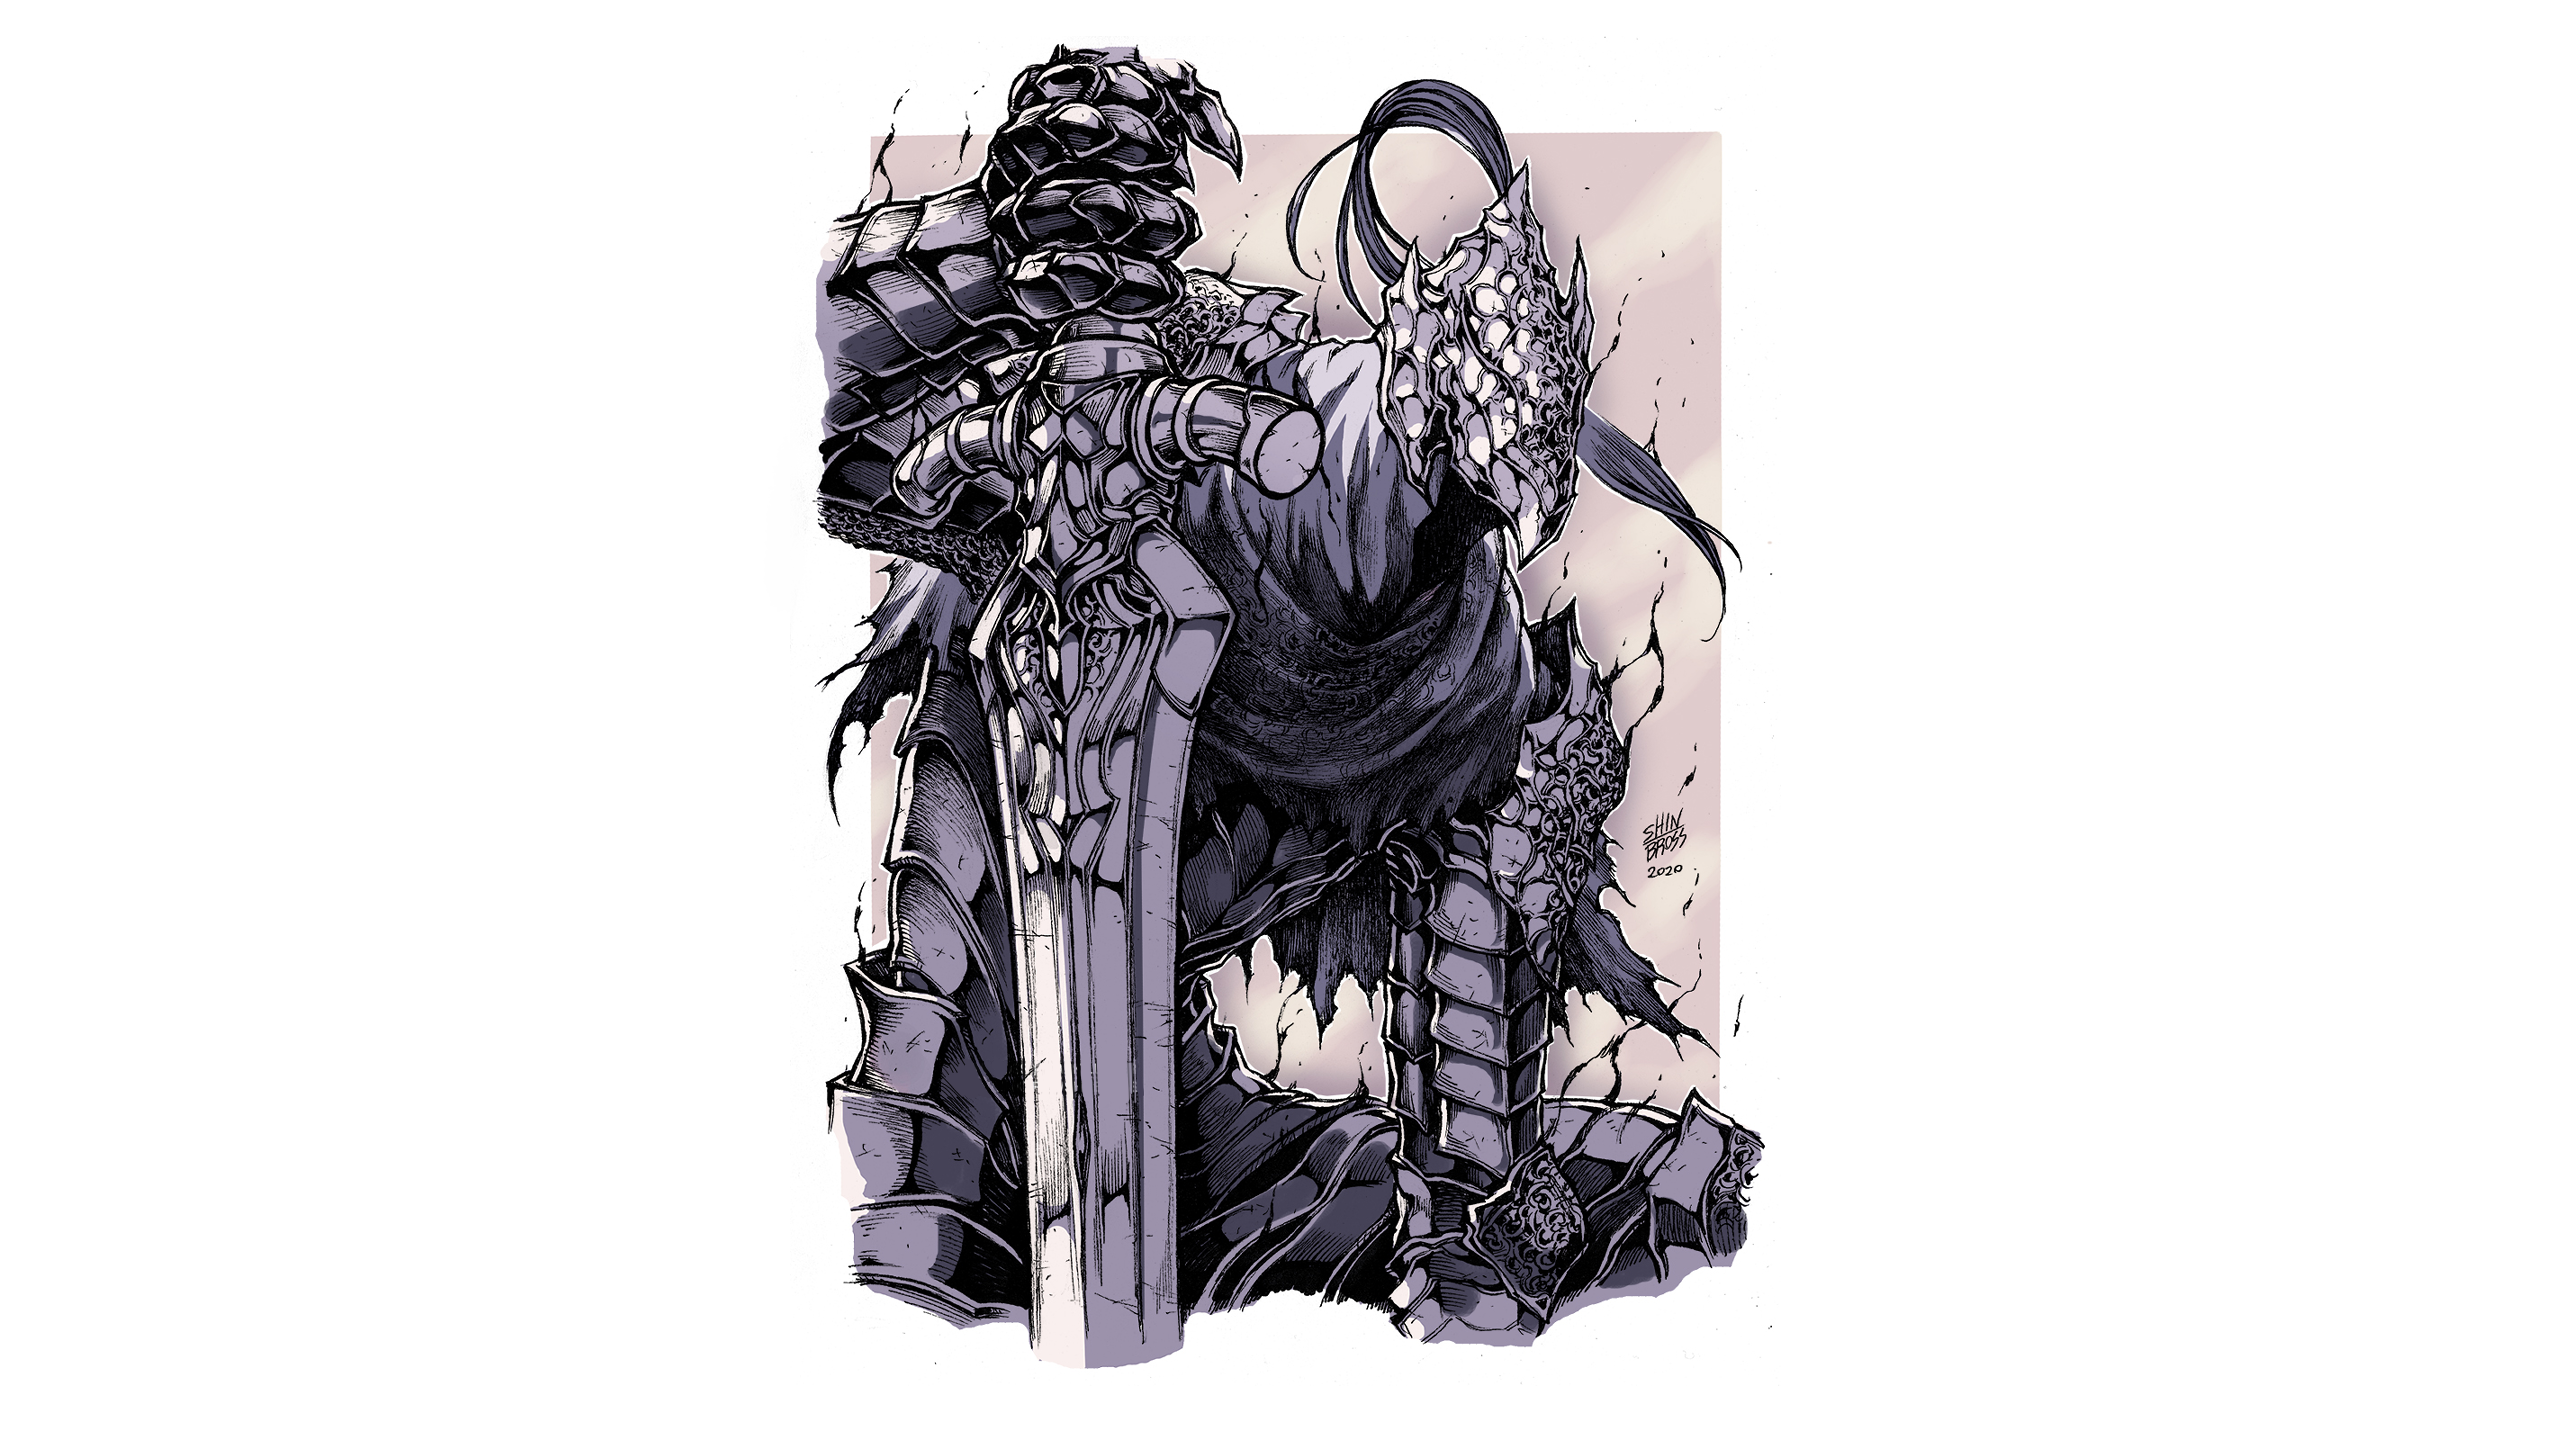 Dark Souls Artorias The Abysswalker Armor Knight Shinbross Wallpaper -  Resolution:2560x1440 - ID:1215500 